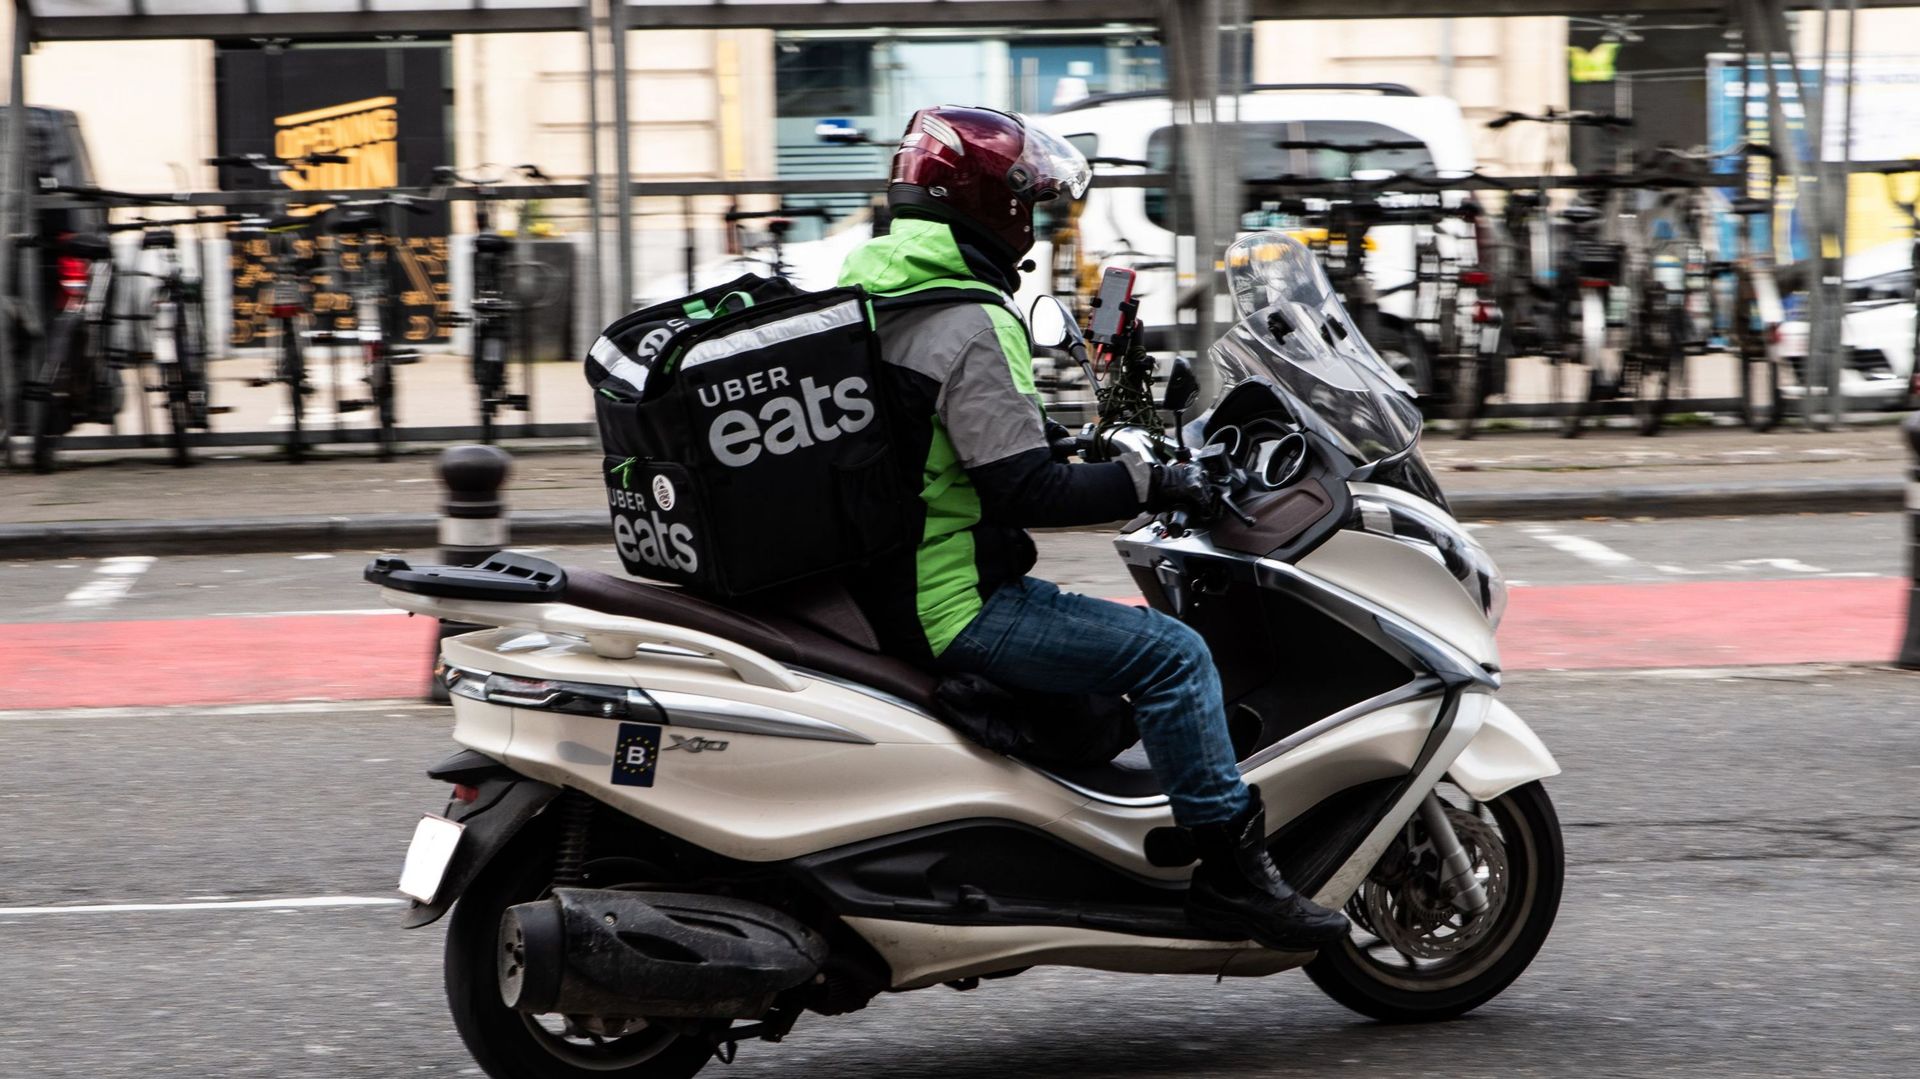 Semaine de la mobilité : les coursiers en scooter réclament des dérogations pour la journée sans voitures